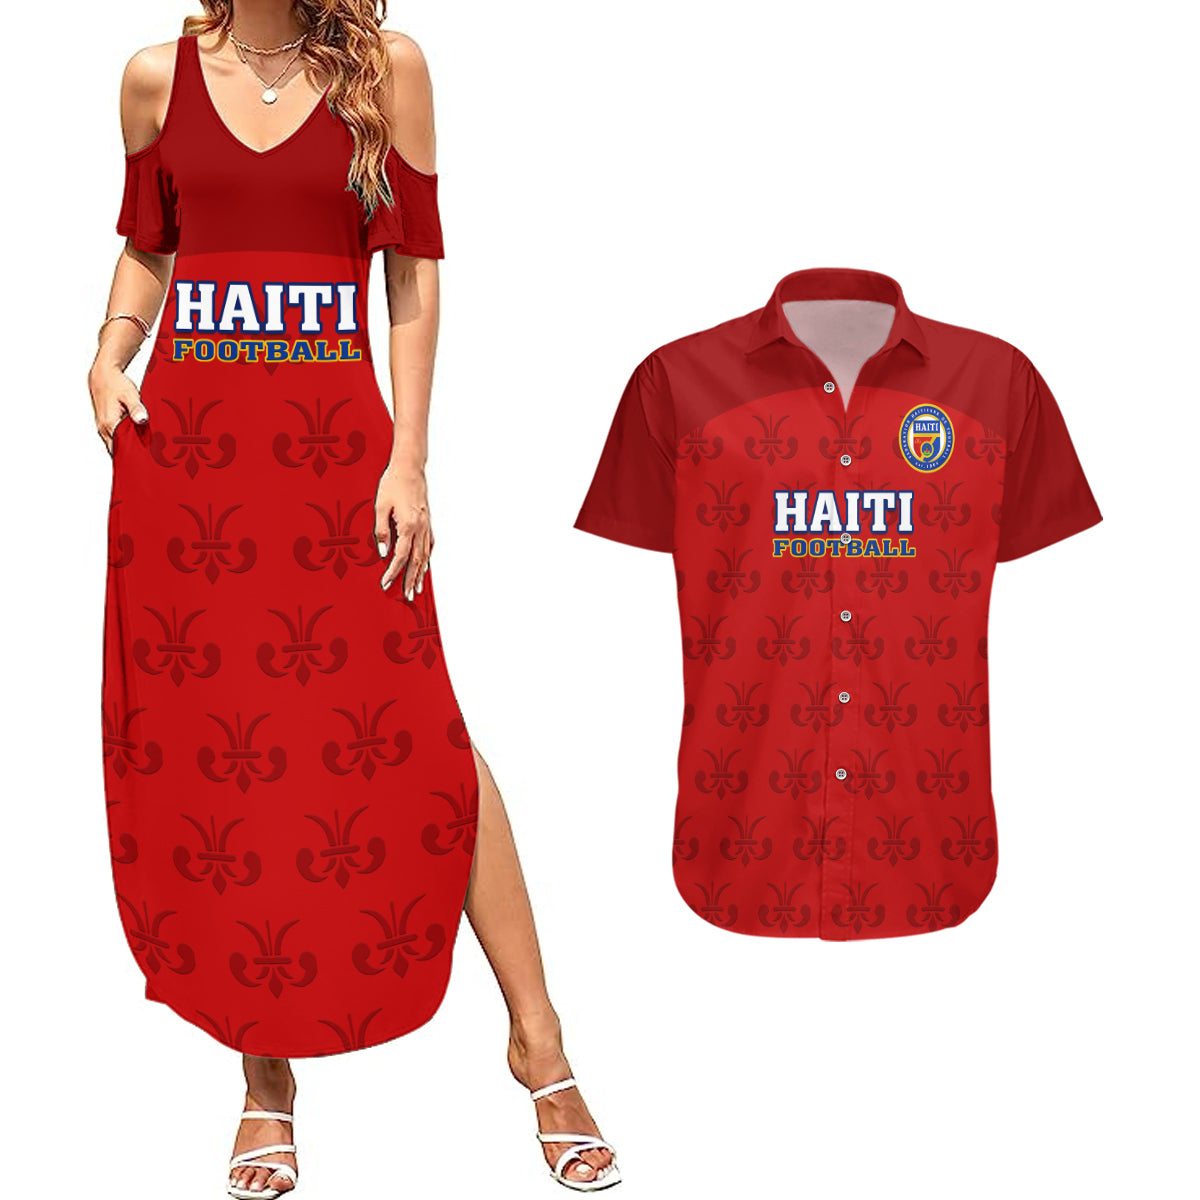 haiti-football-couples-matching-summer-maxi-dress-and-hawaiian-shirt-les-grenadieres-2023-world-cup-red-version